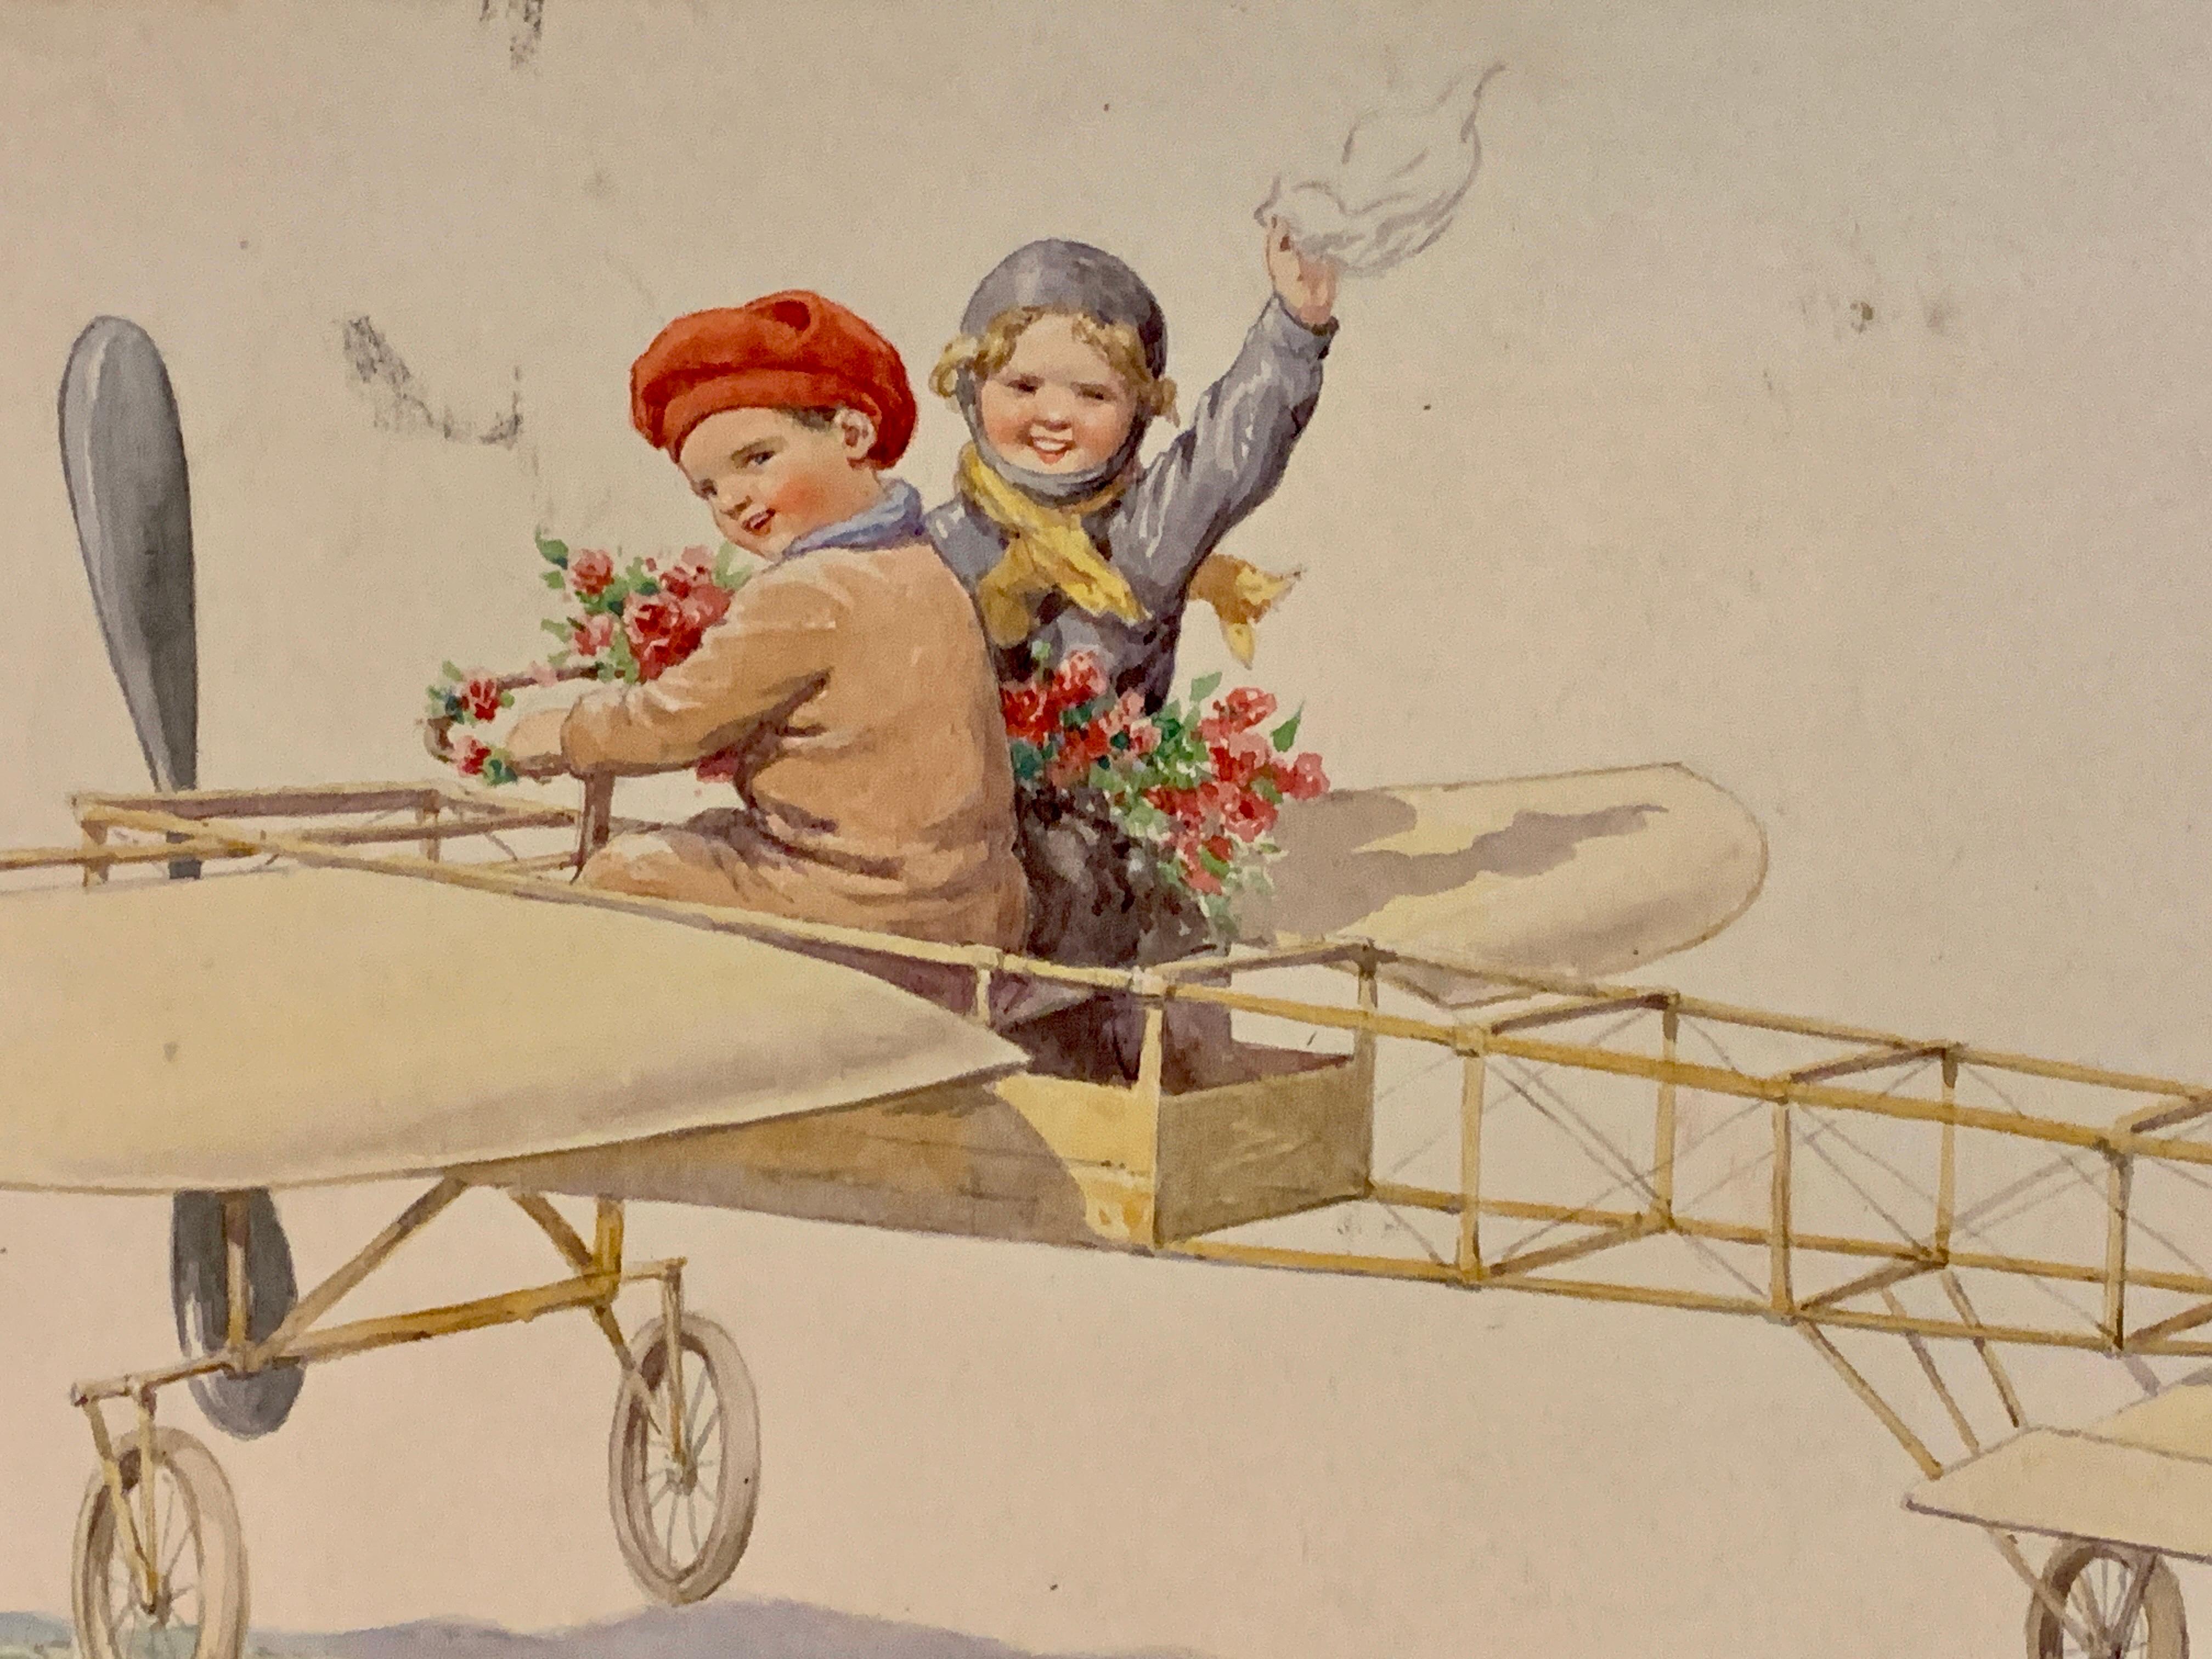 Deutsches Aquarell von Kindern, die in einem Flugzeug über einer Landschaft fliegen, aus dem 19. Jahrhundert 